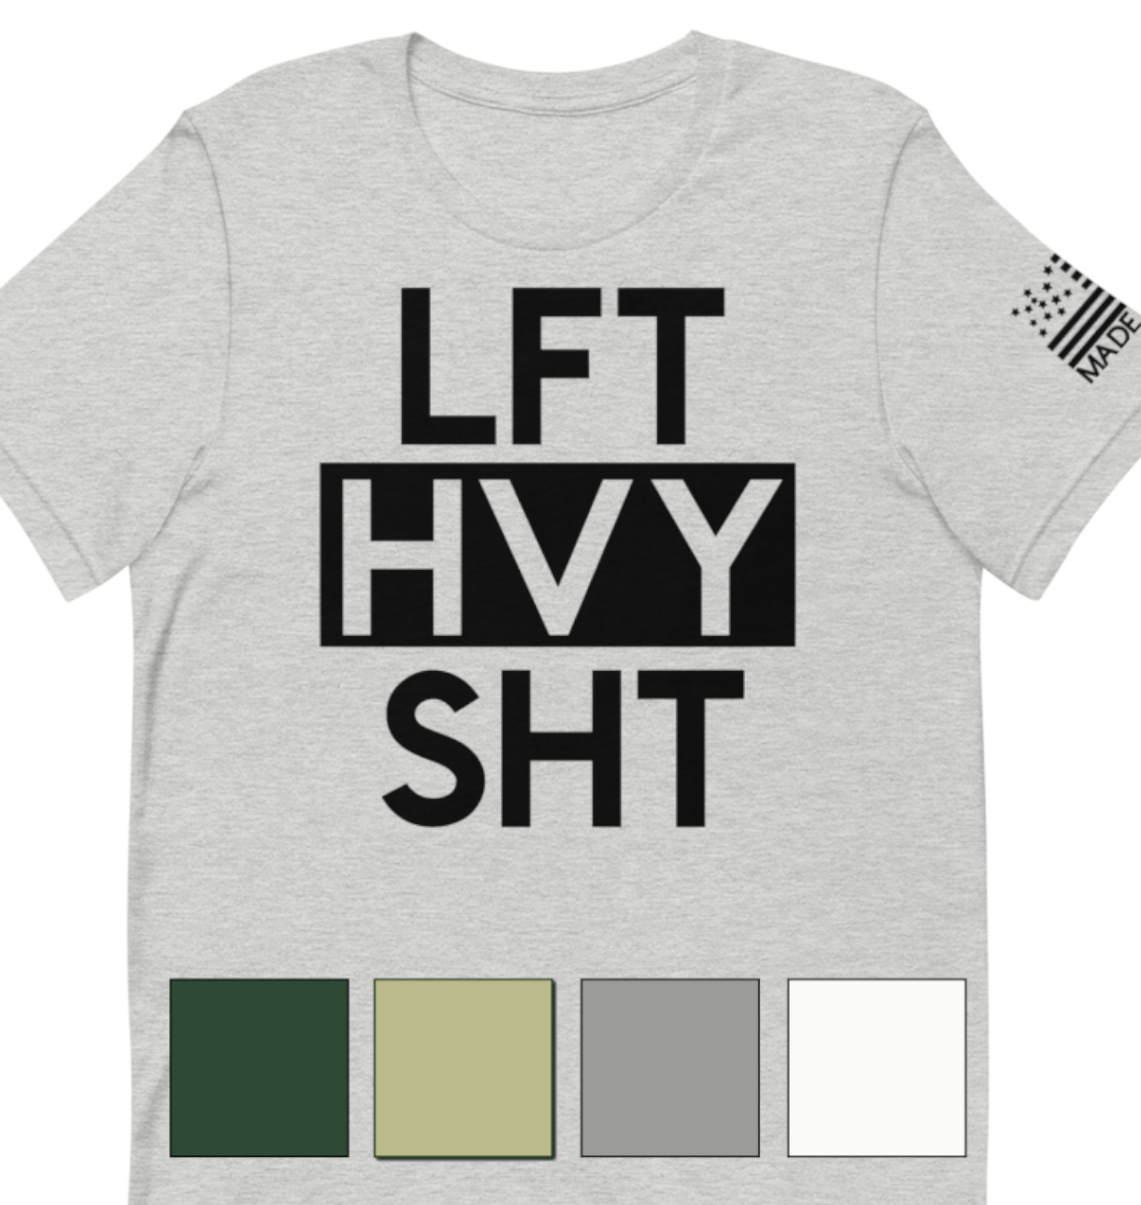 LFT HVY SHT - Short Sleeve